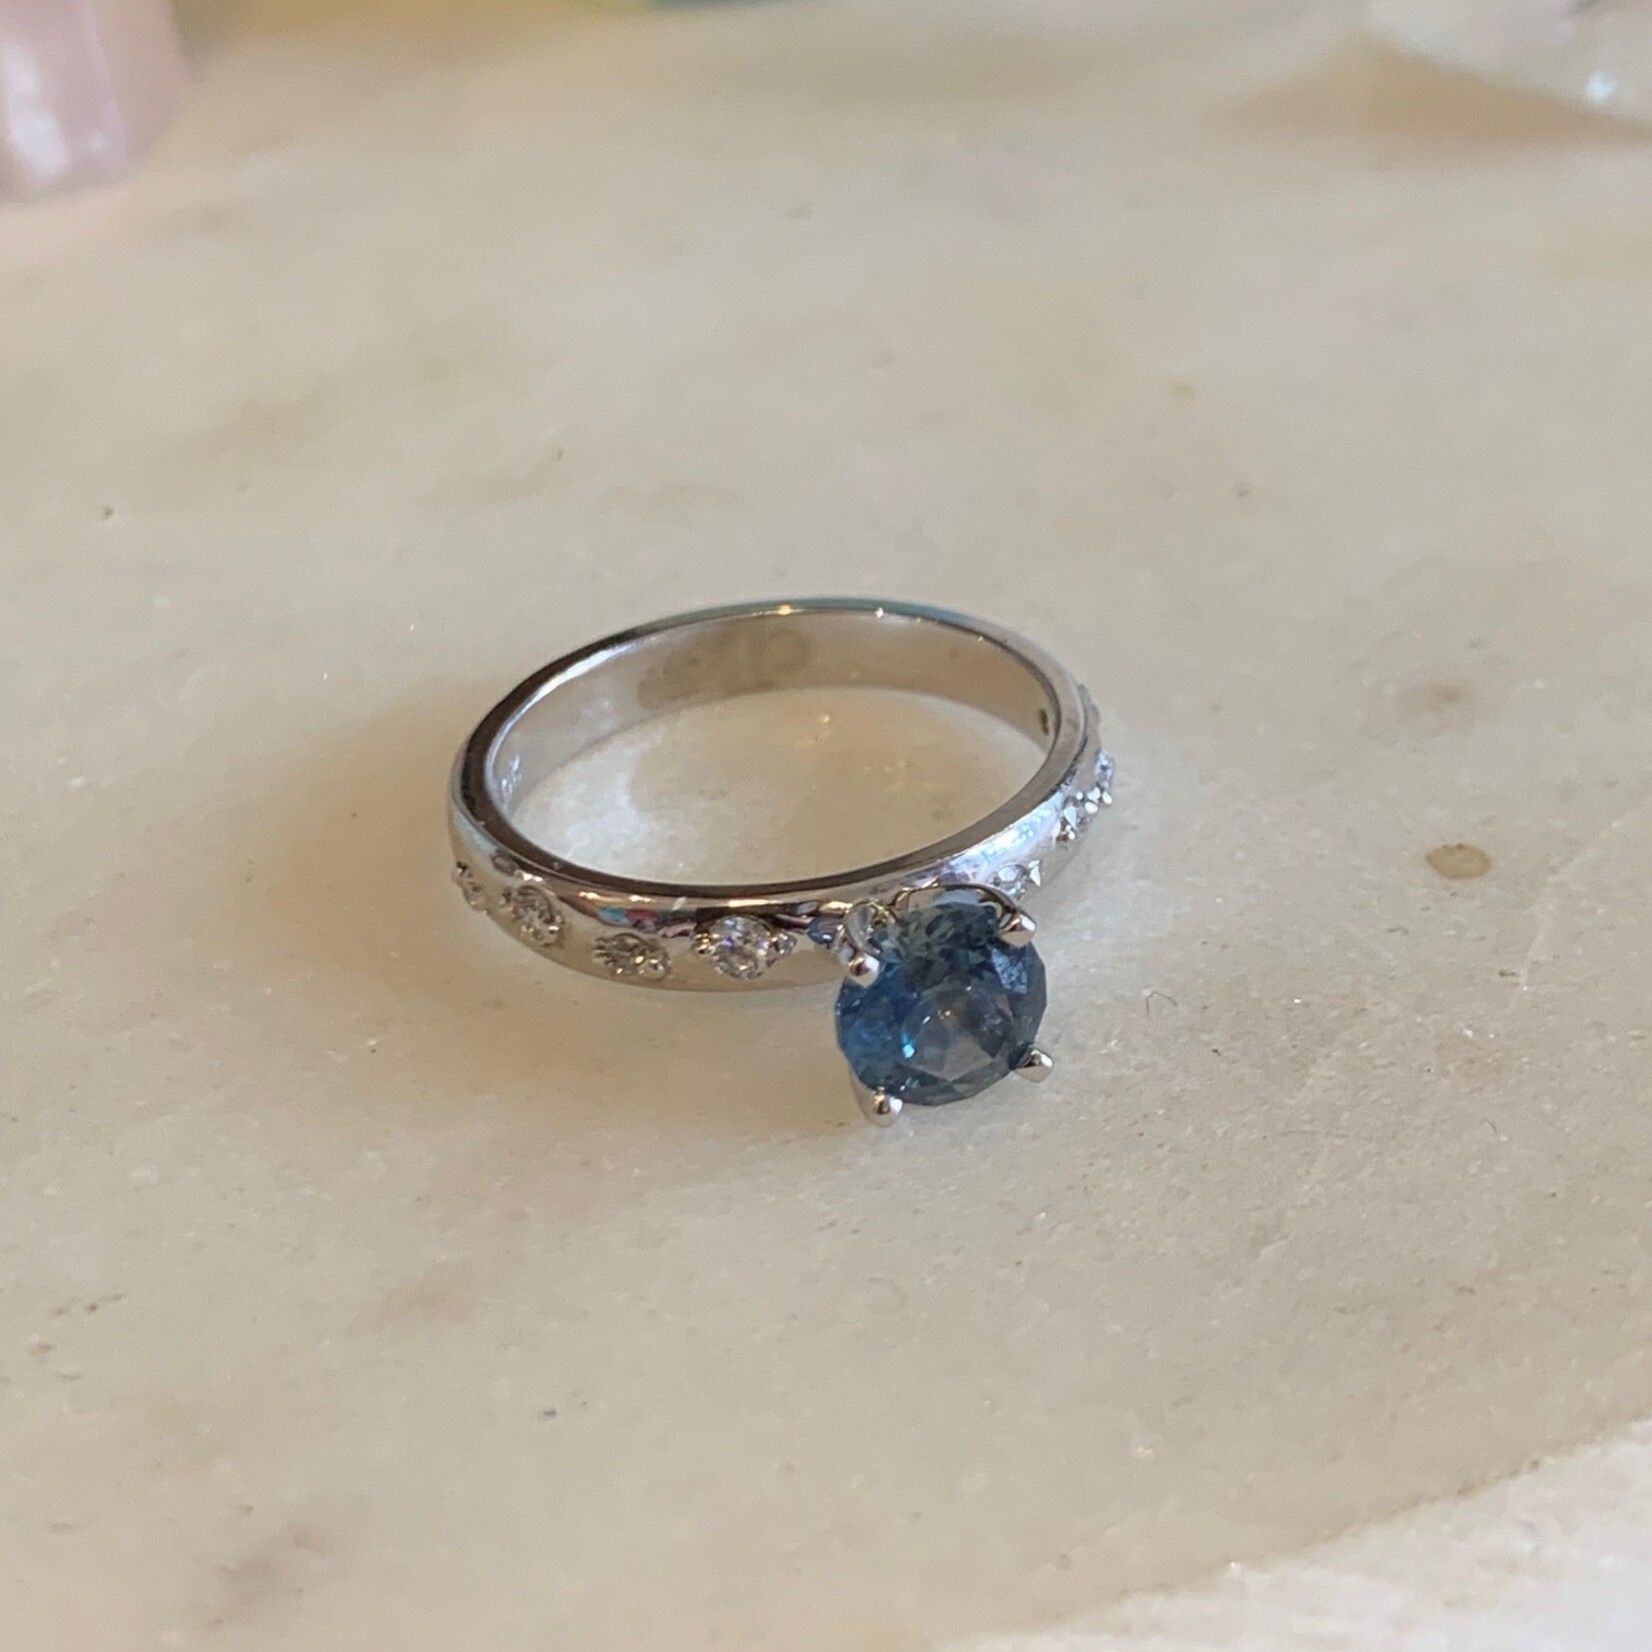 Efron Designs 10K White Gold Montana Sapphire + Diamond Ring Size 6.5